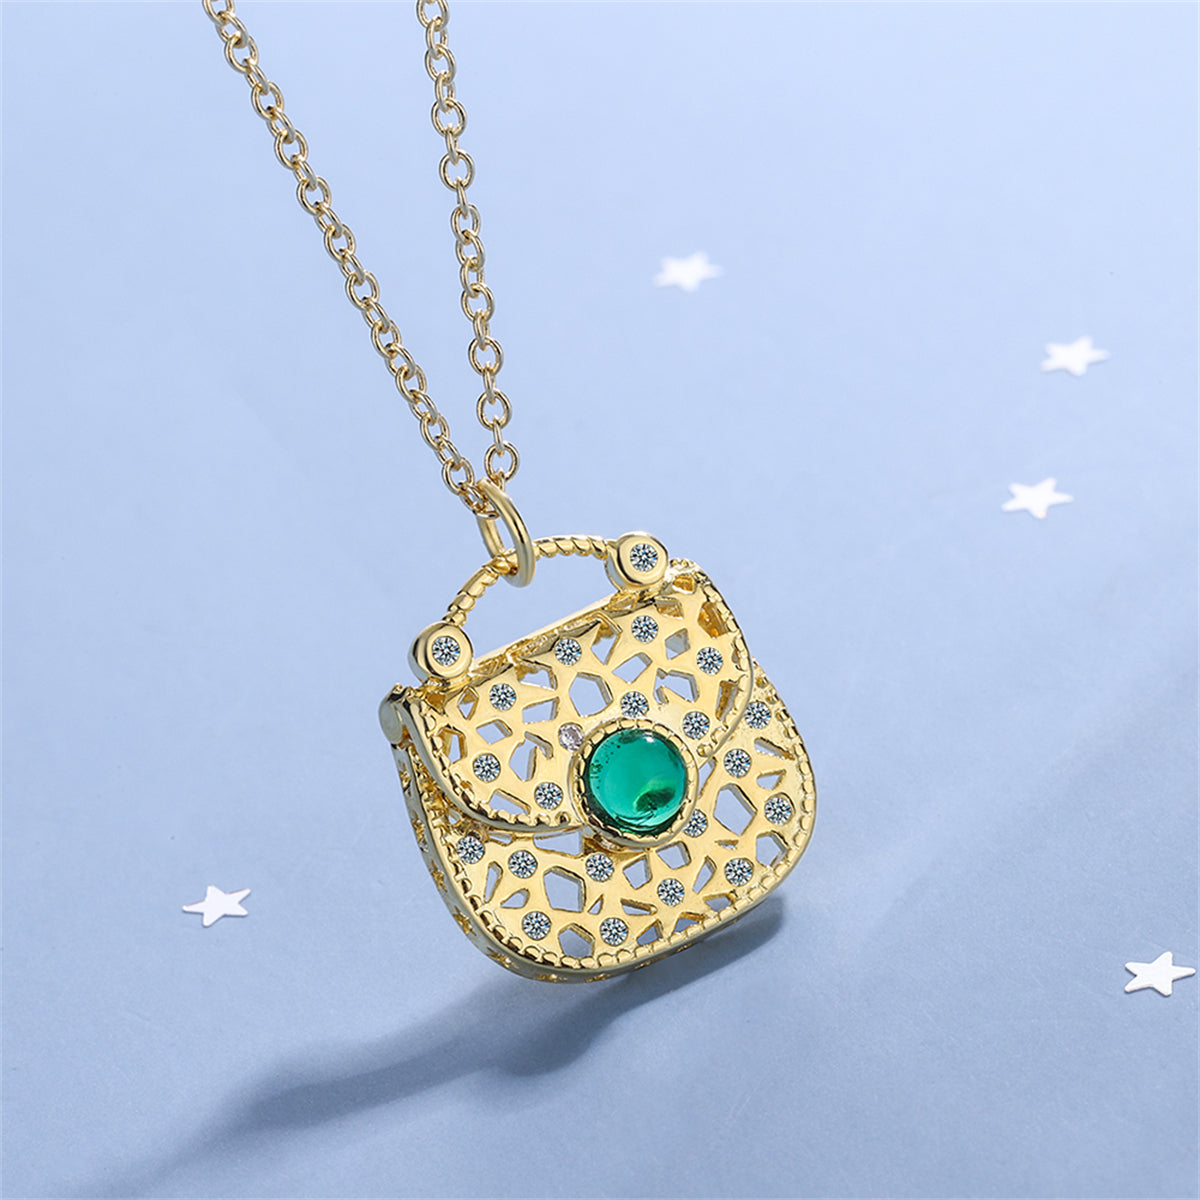 Green Moonstone & Cubic Zirconia Handbag Pendant Necklace